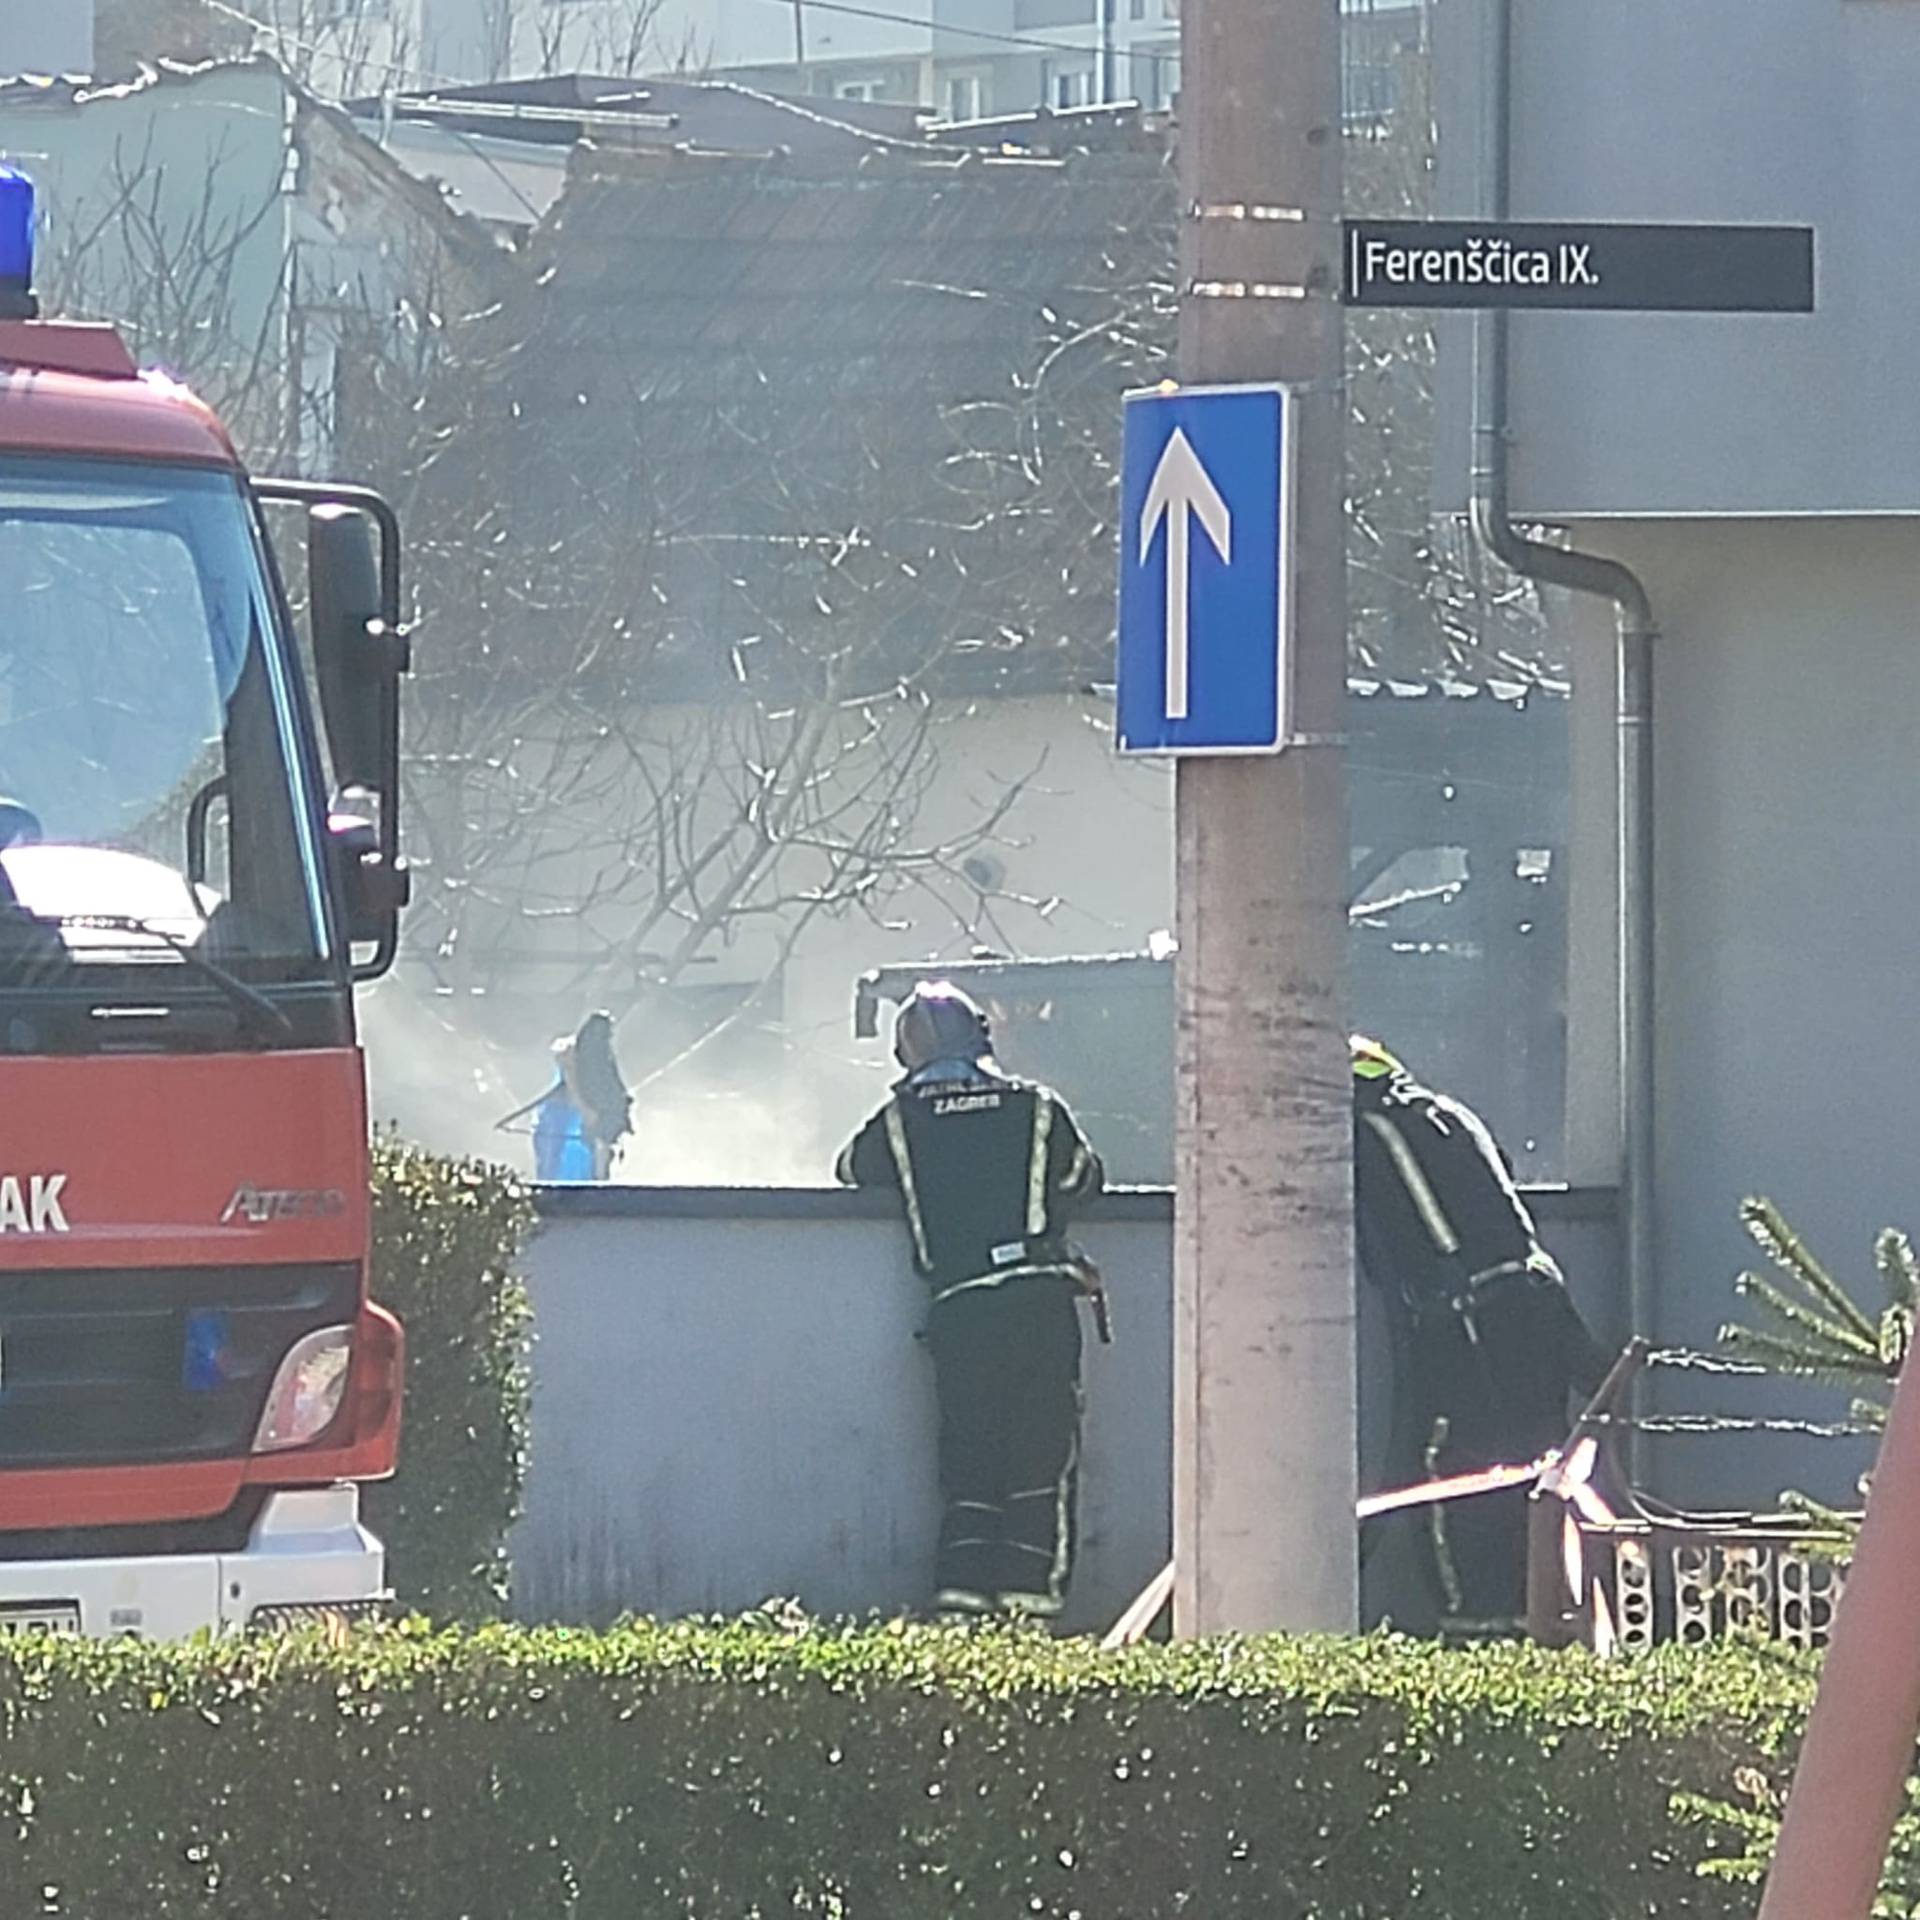 VIDEO Buktinja u Zagrebu: Na Ferenščici se zapalila garaža uz zgradu. U njoj bilo eksploziva?